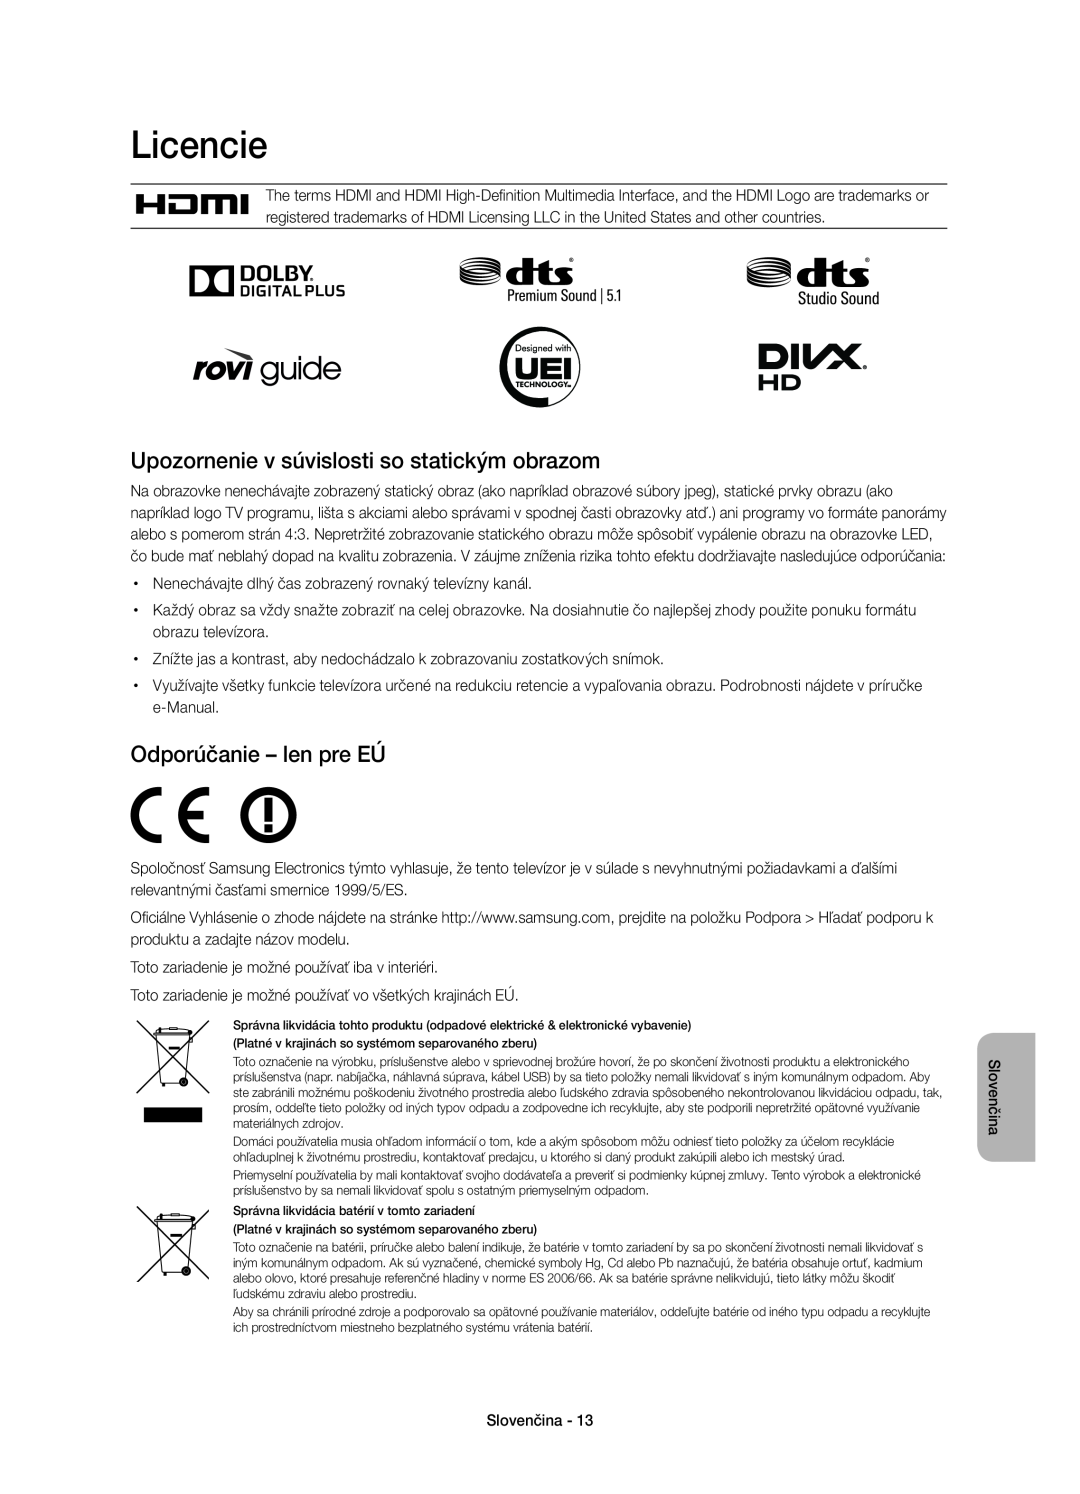 Samsung UE55H6500STXXH manual Licencie, Upozornenie v súvislosti so statickým obrazom, Odporúčanie - len pre EÚ, Slovenčina 